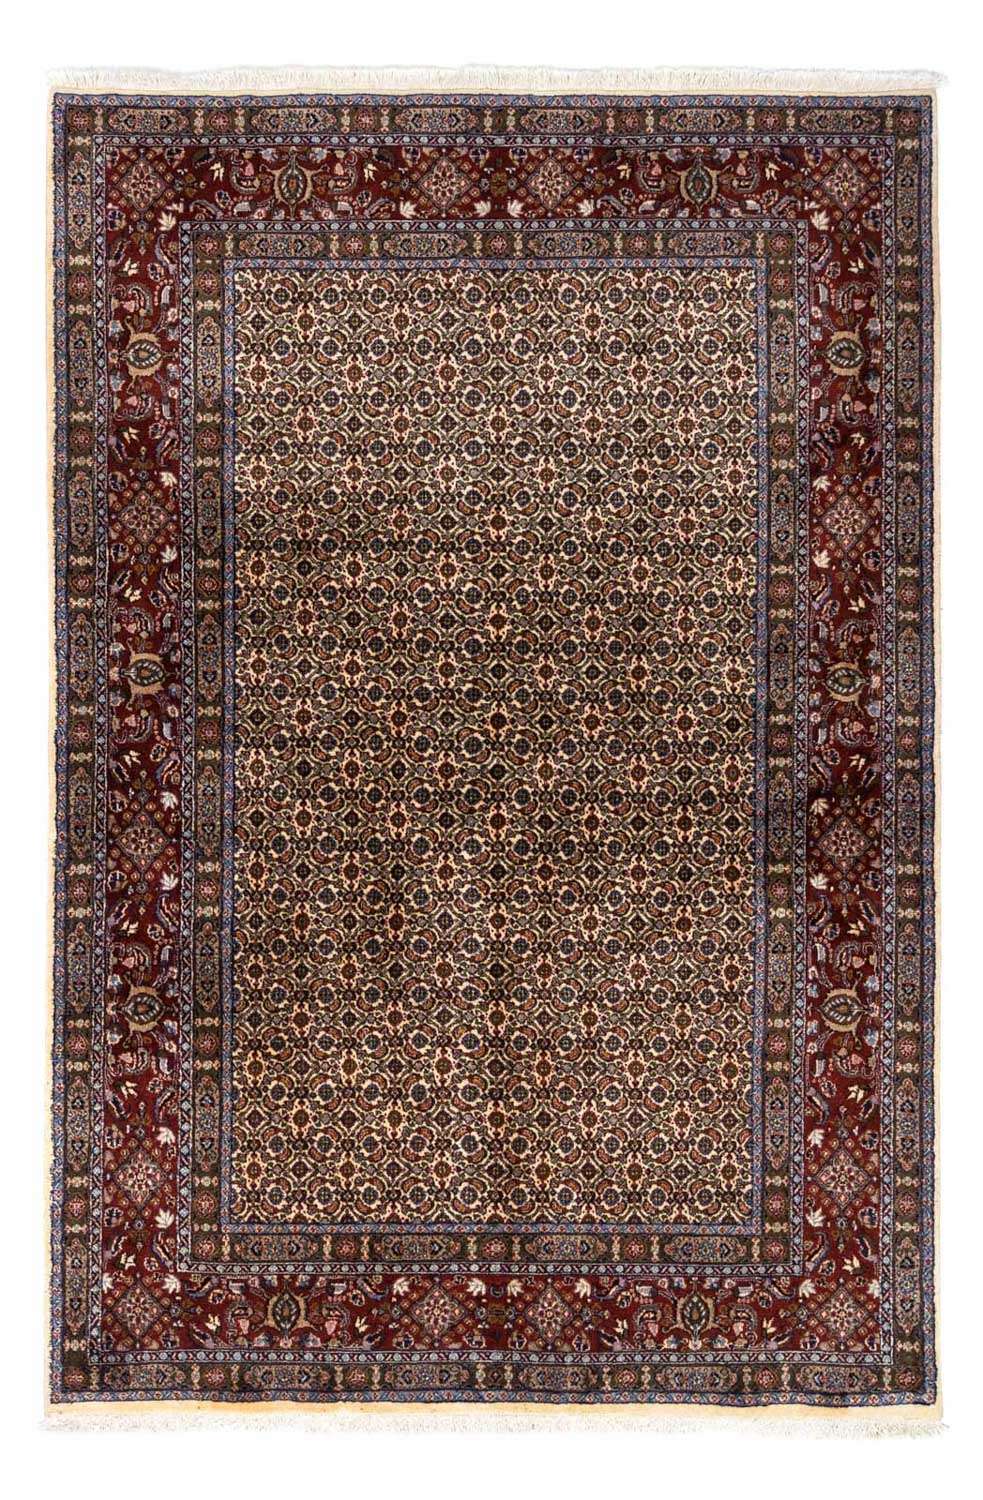 Tapis persan - Classique - 237 x 168 cm - beige